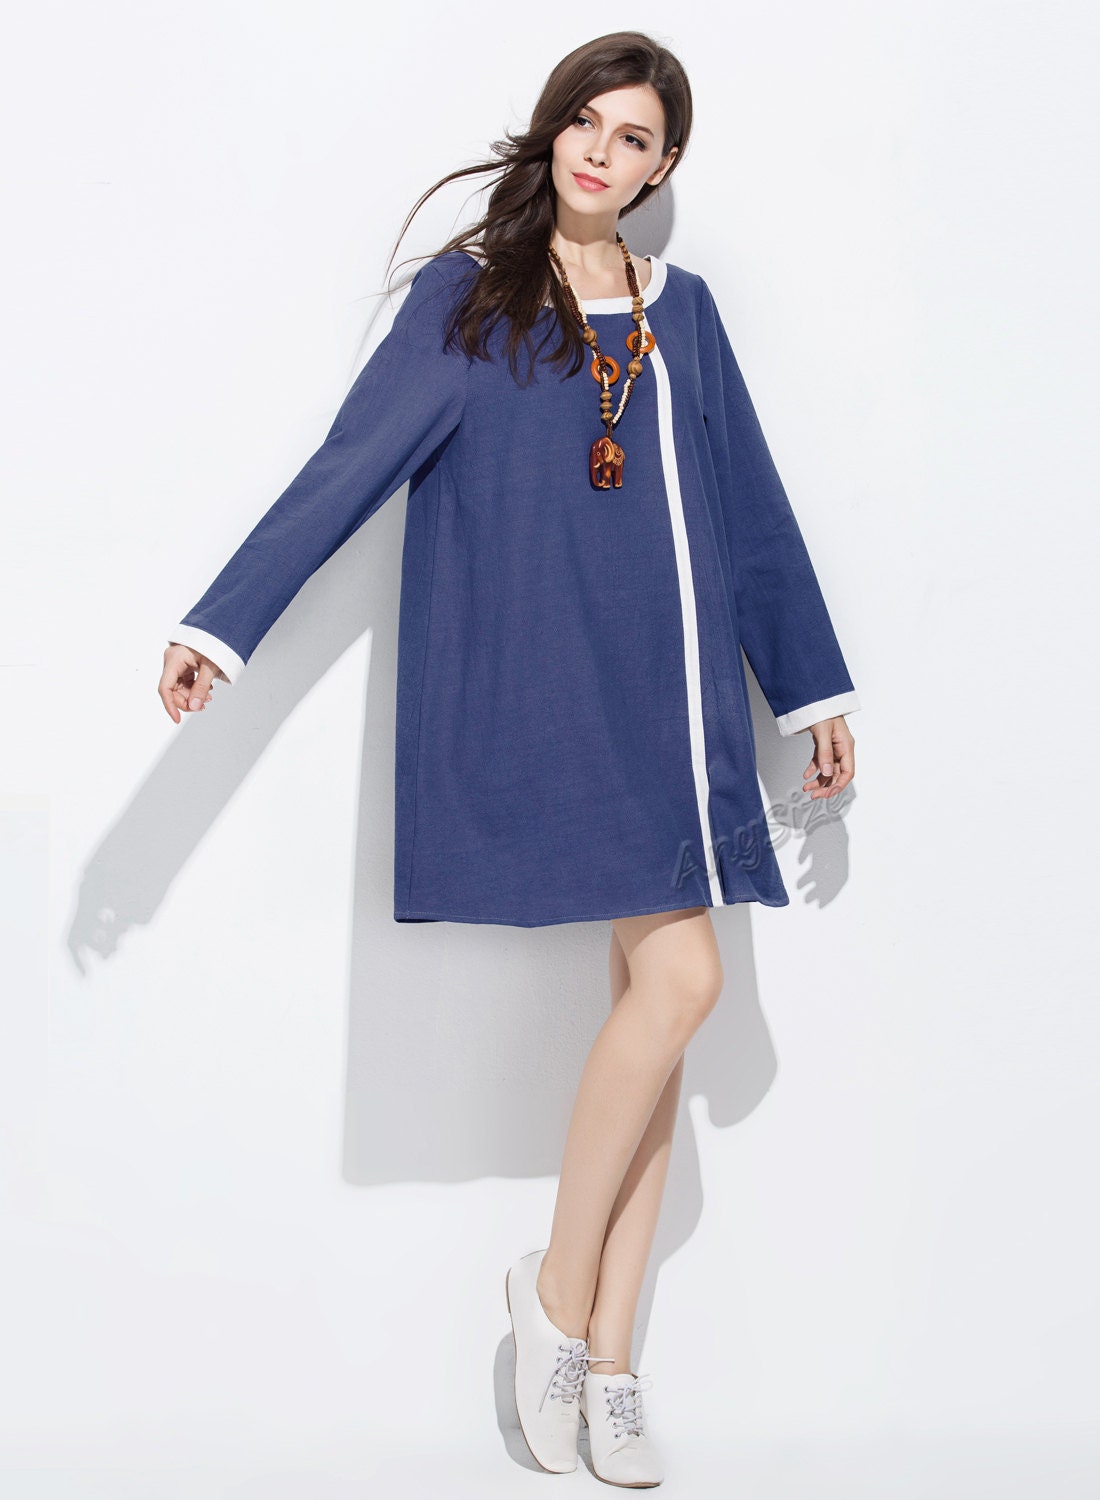 Anysize front stripe soft linen&cotton dress plus size dress | Etsy